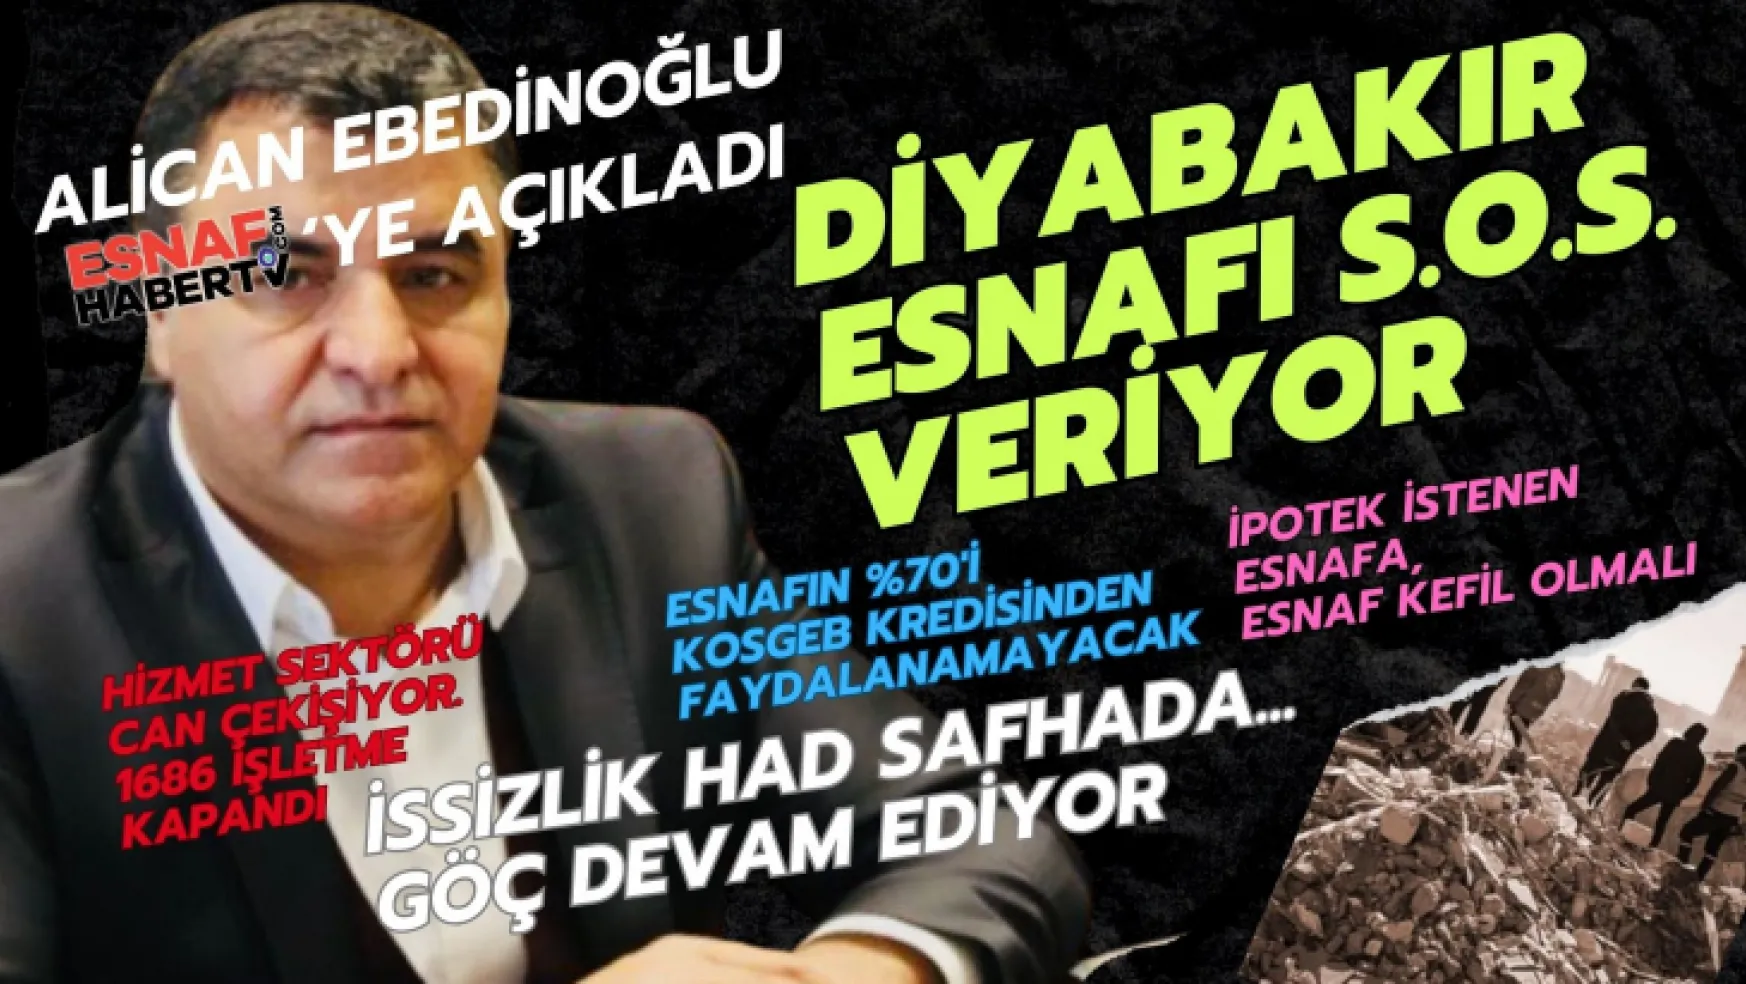 DESOB Başkanı Ebedinoğlu: Diyarbakır'da İstihdam Yükünü Esnaf ve Sanatkar Yükleniyor